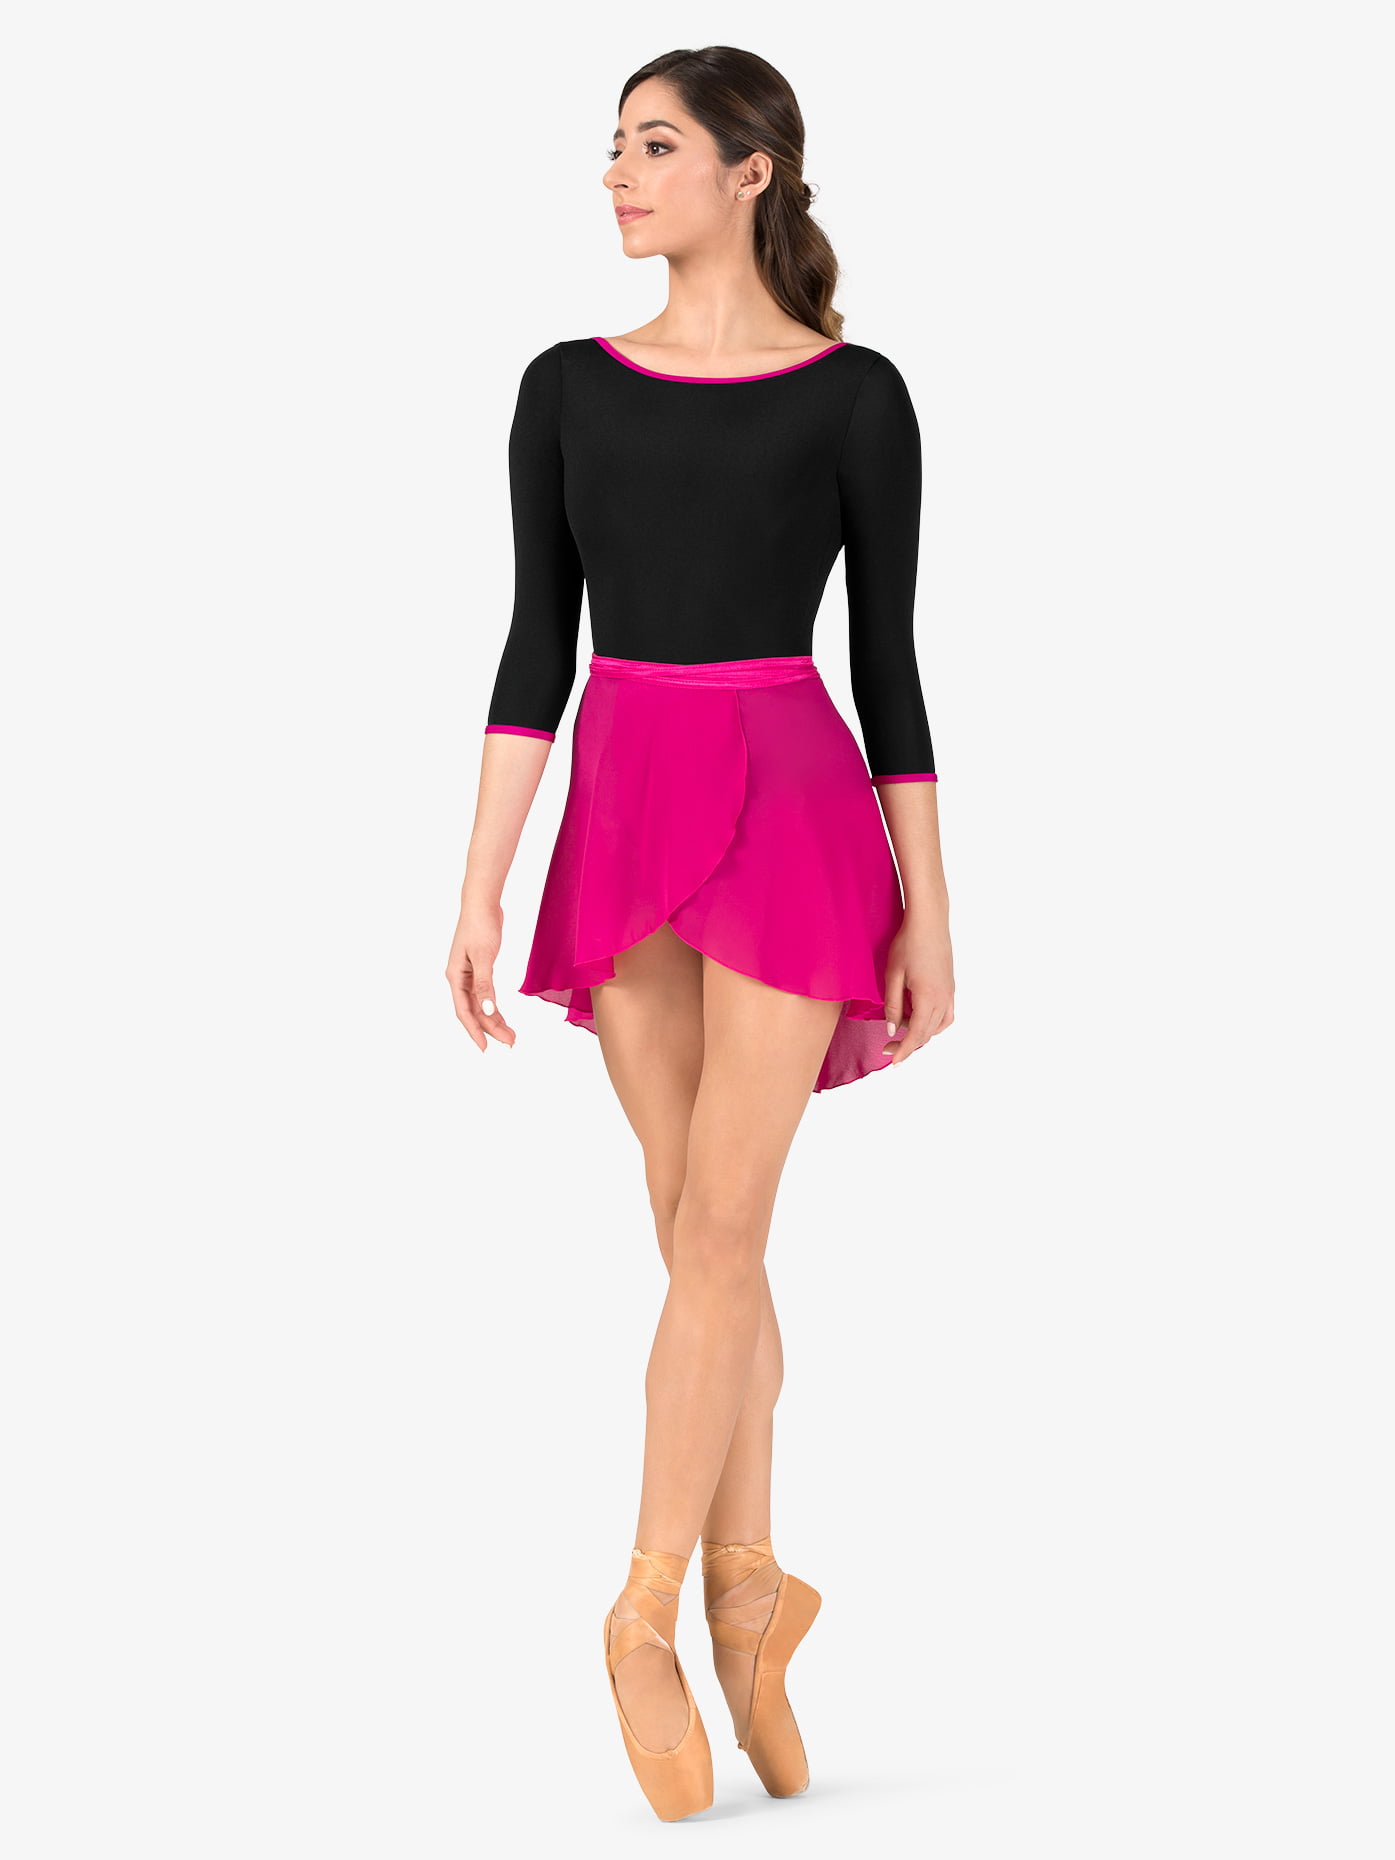 Asymmetric Ballet Chiffon Wrap Skirts Dance Skirt with Waist Tie for Women Girls